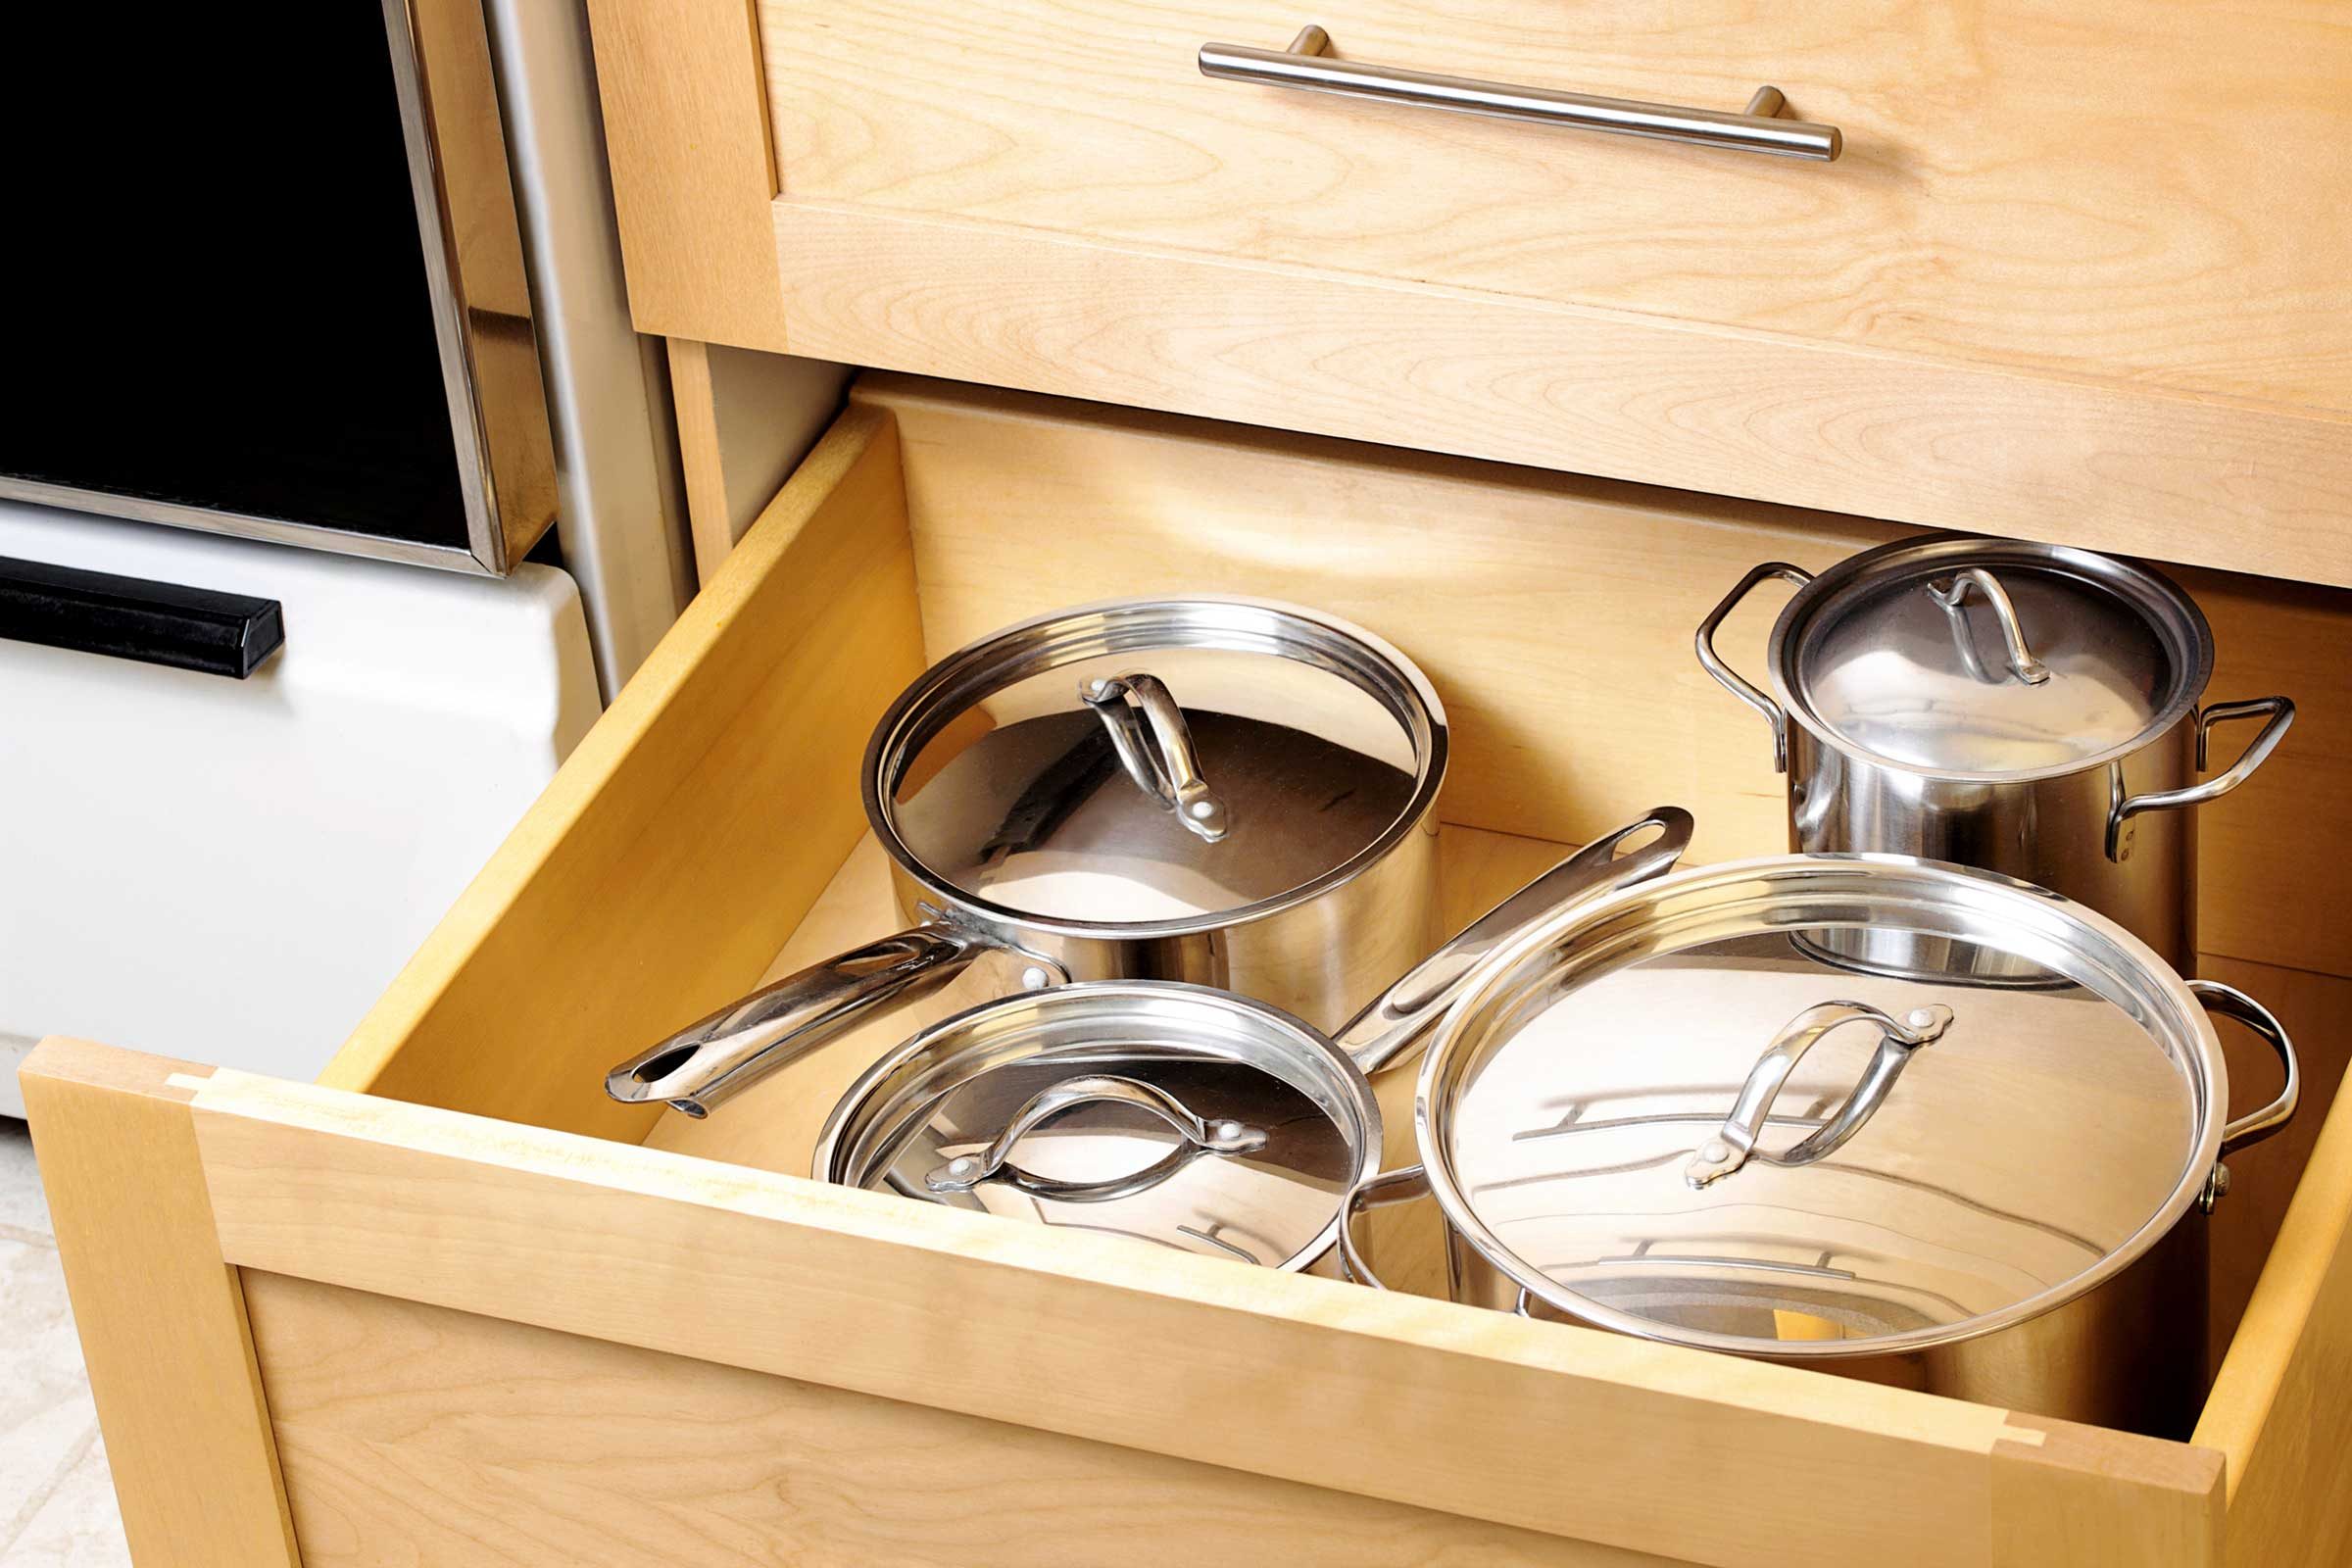 kitchen pots and pans organizer design